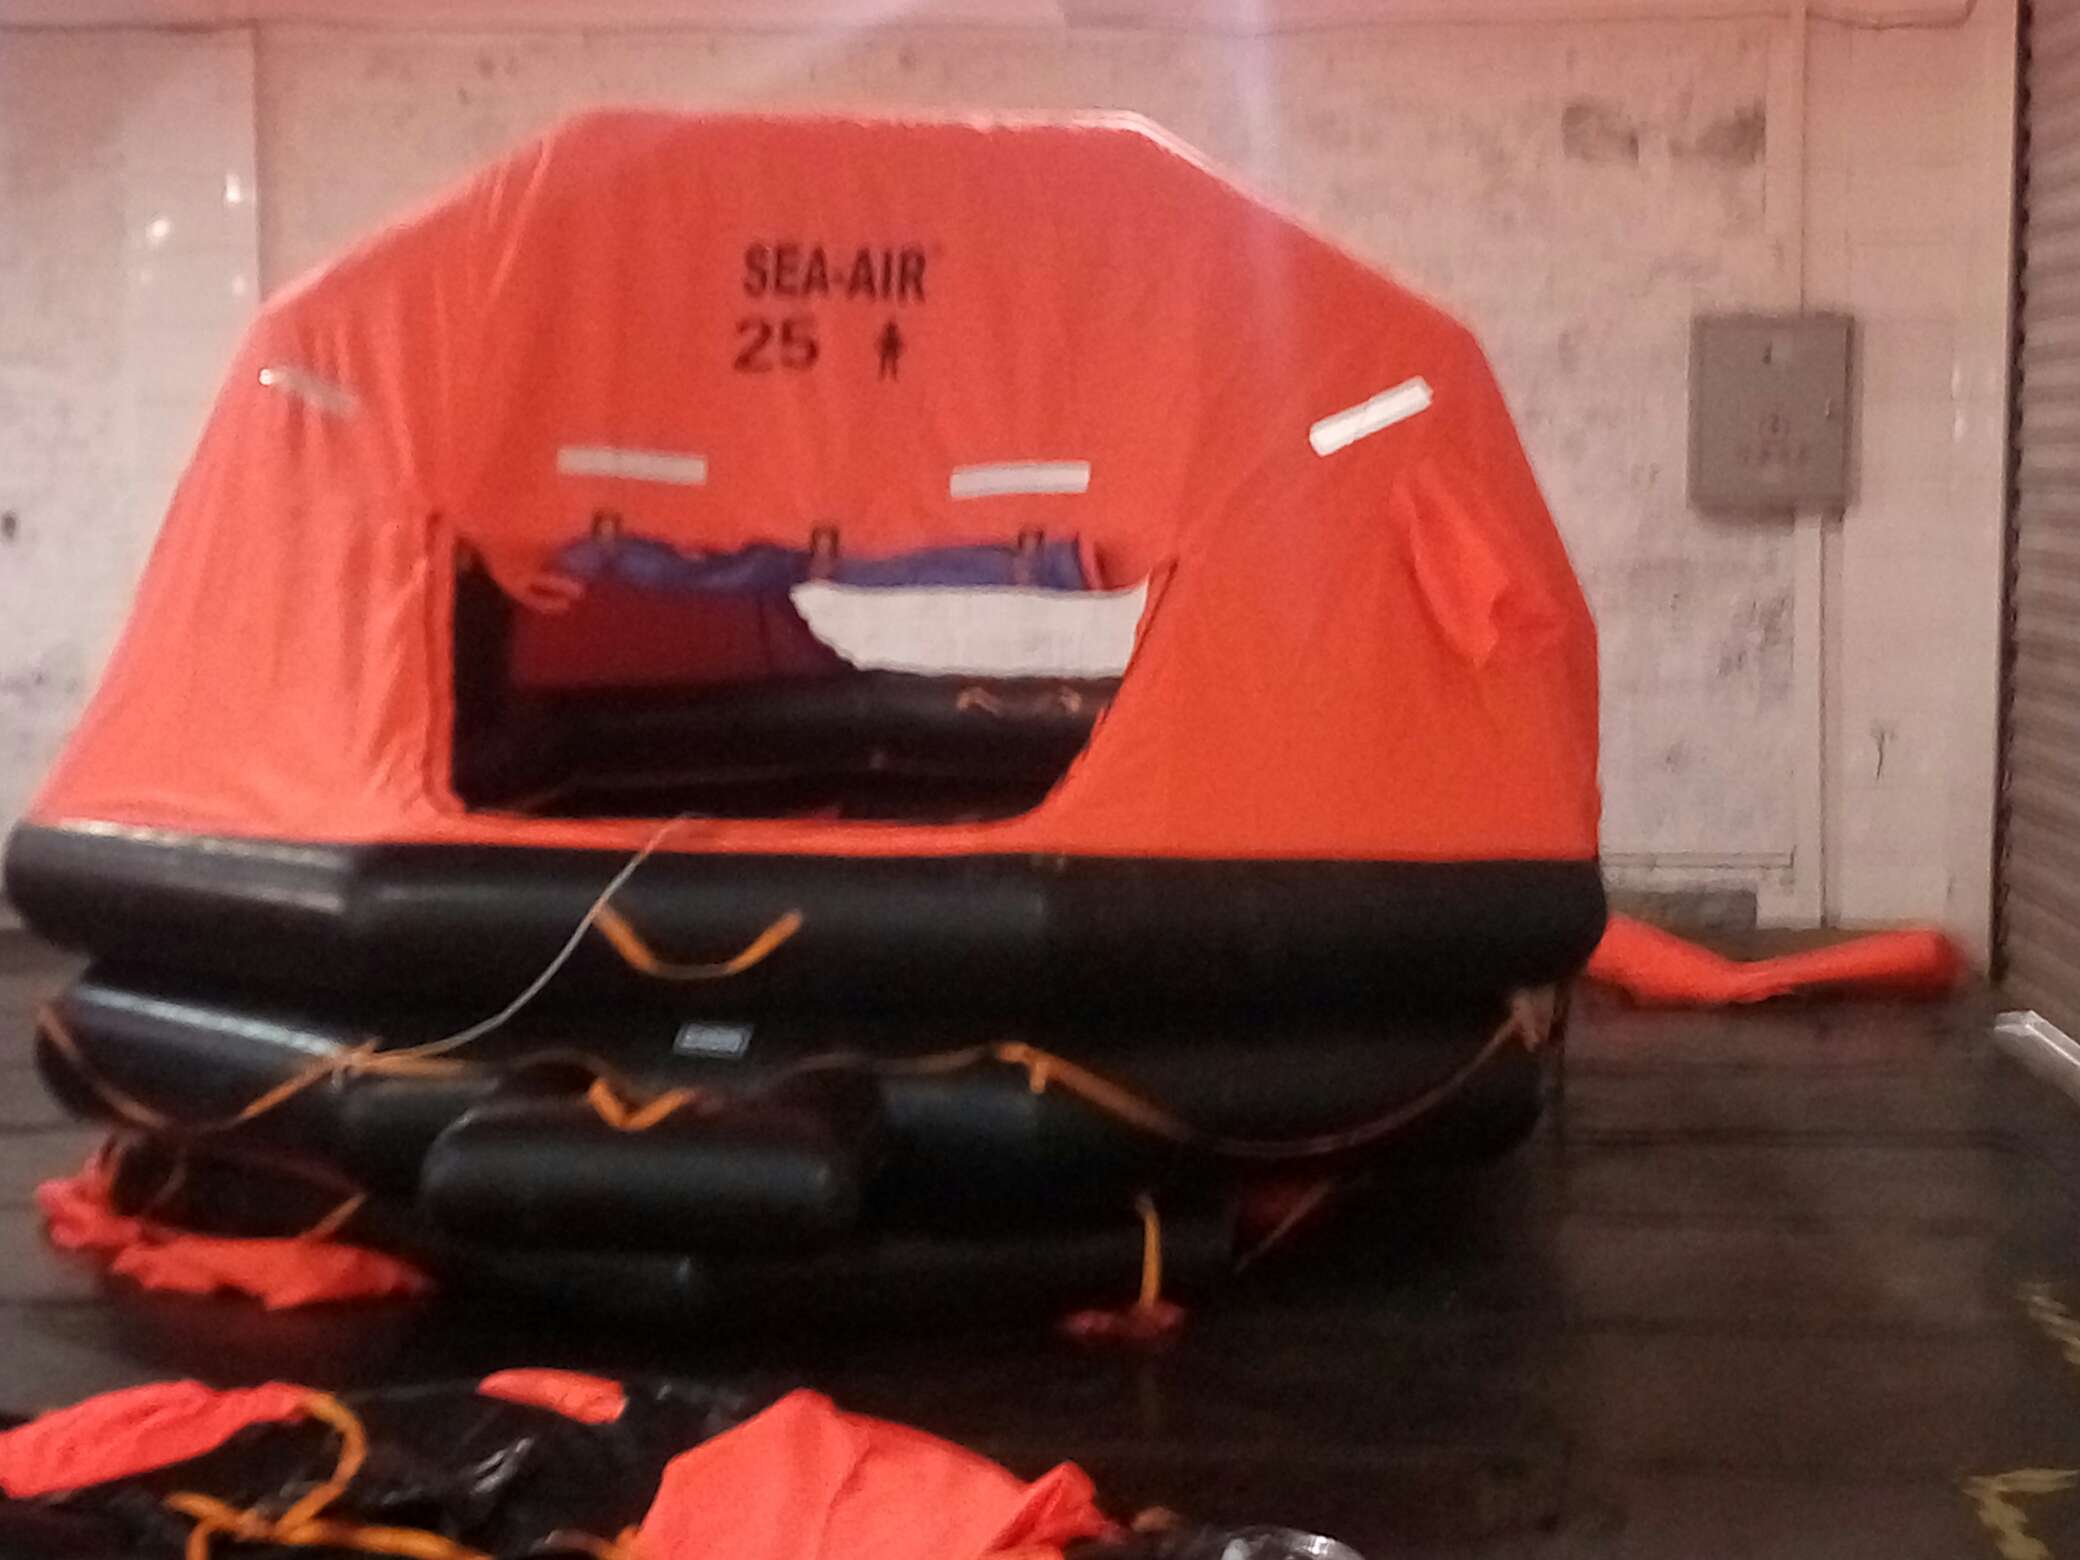 20人自扶正救生筏 可吊式救生筏 A型救生筏释放器配备的救生筏宁波海神SEAI-AIR救生筏